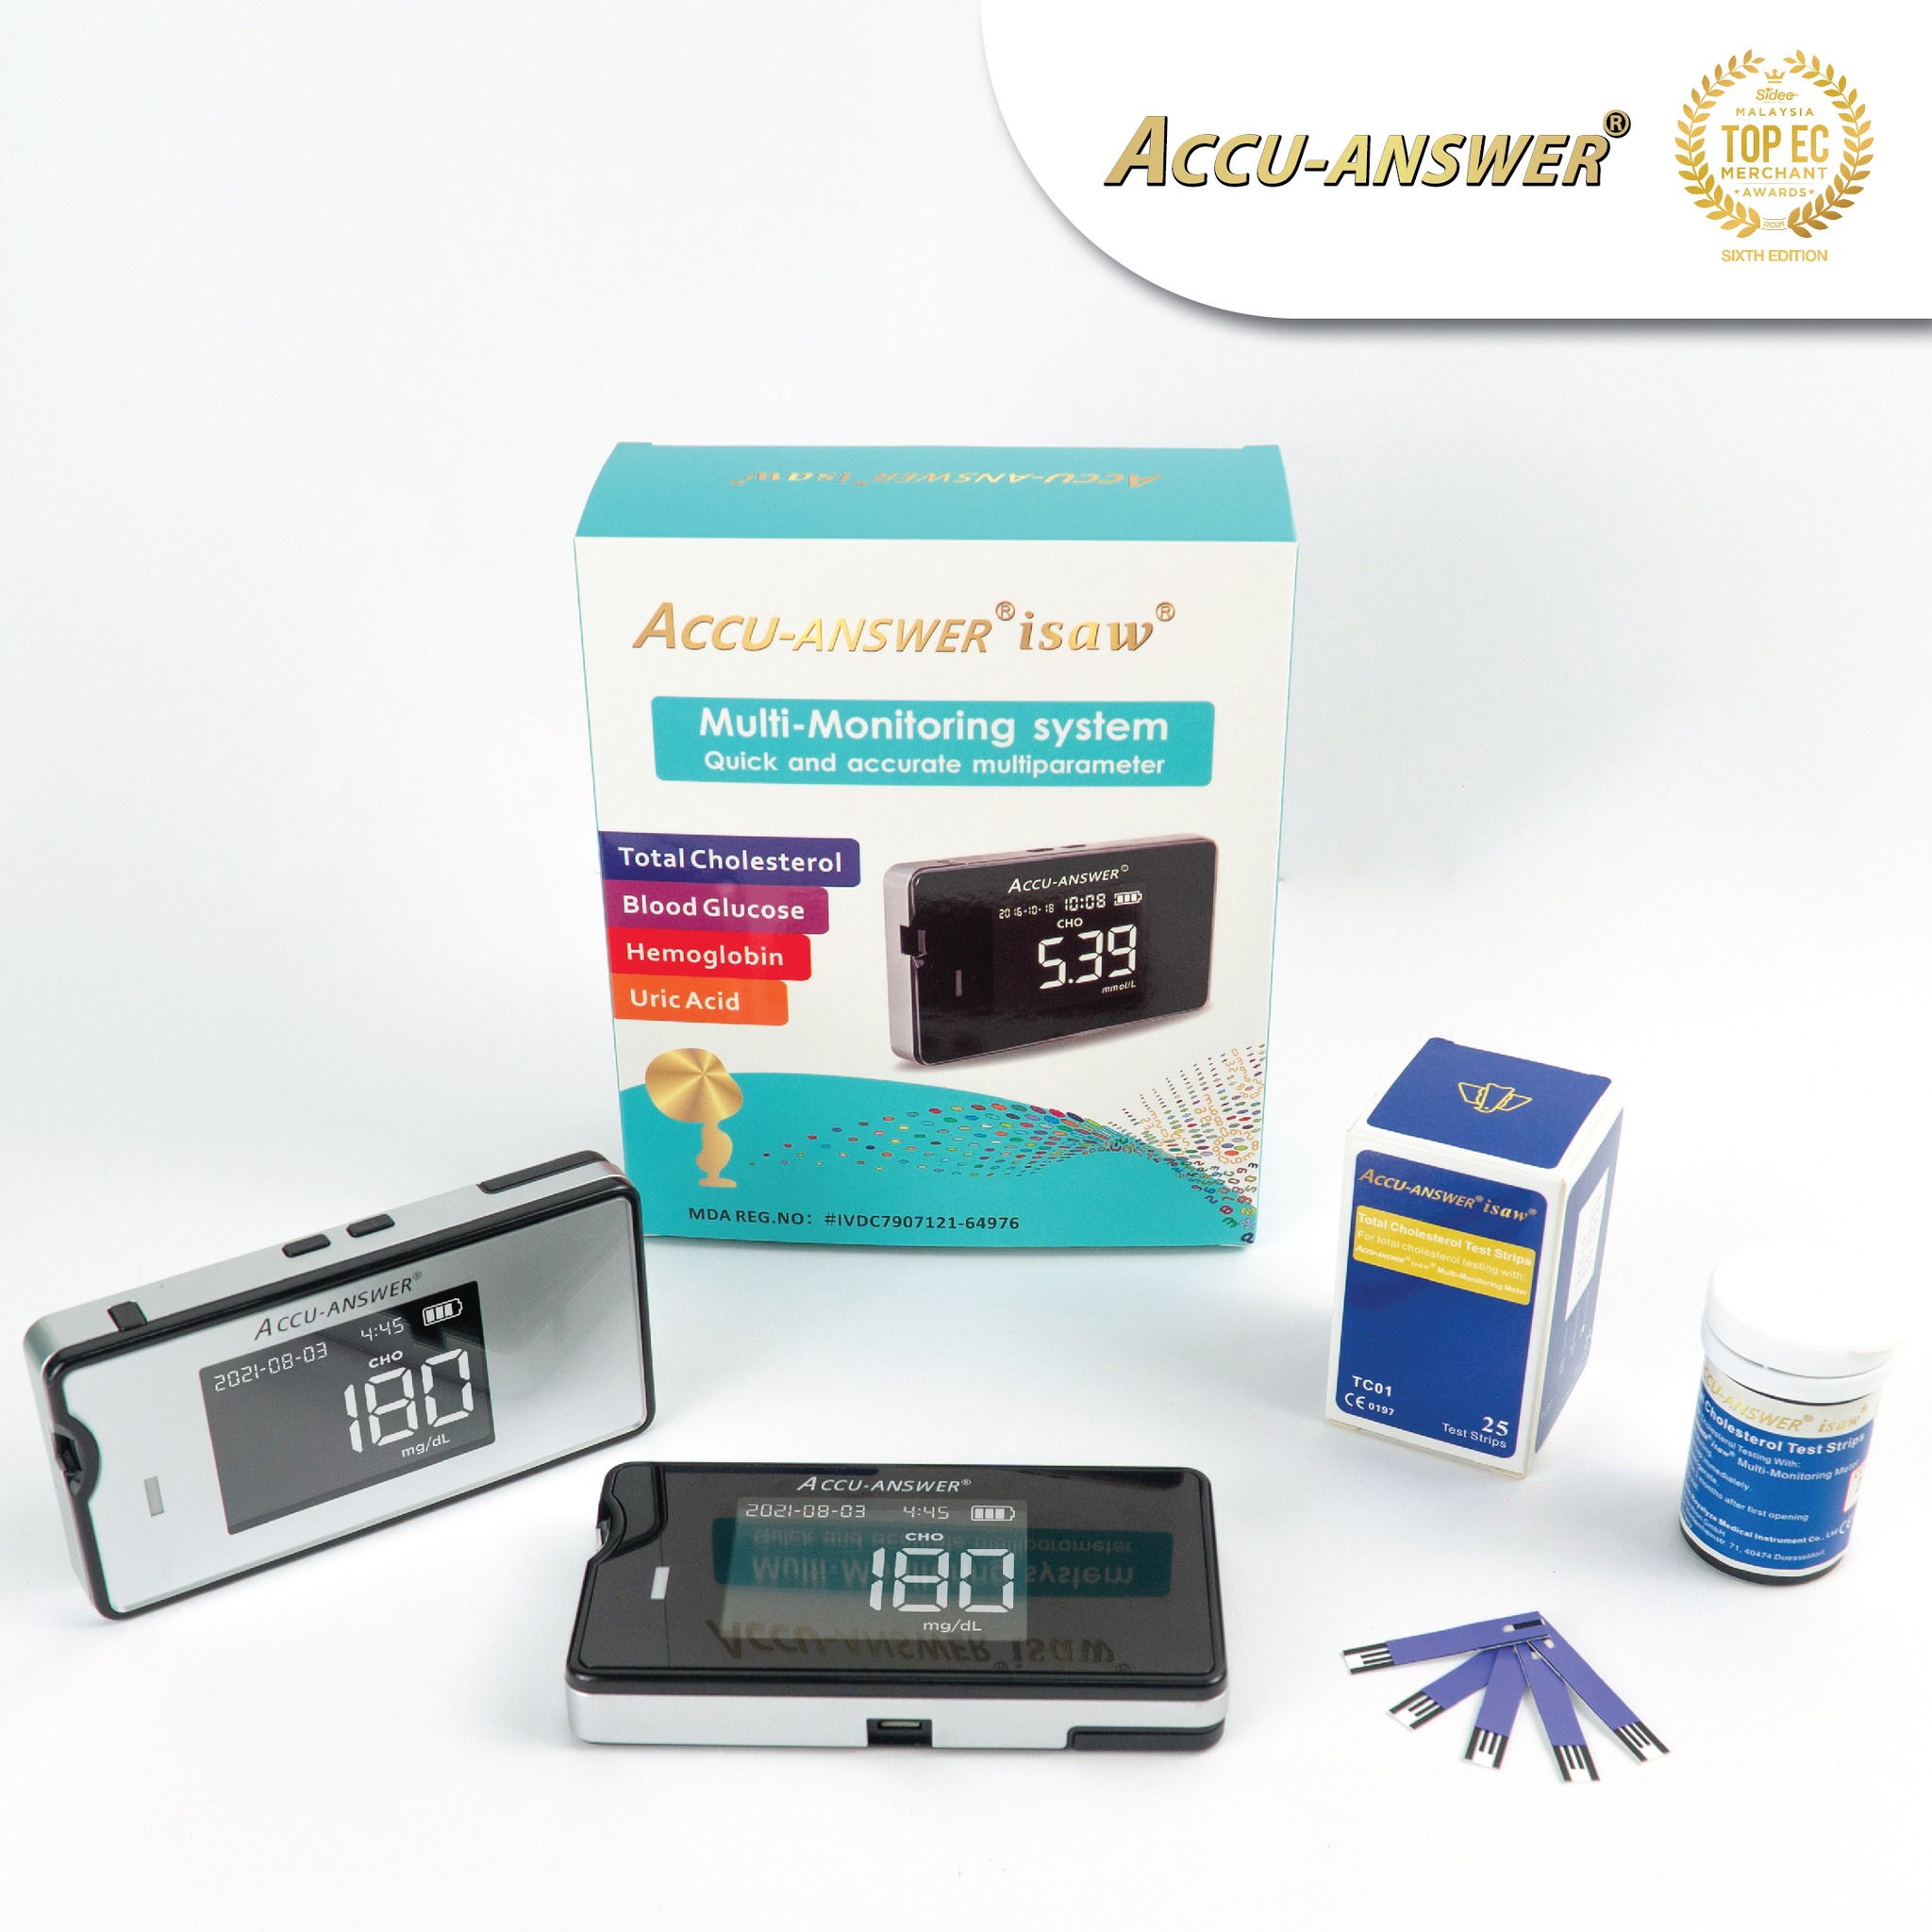 Accu-Answer 4 in 1 Multifunctional Blood Glucose Meter juga berfungsi untuk membuat bacaan Kolesterol.